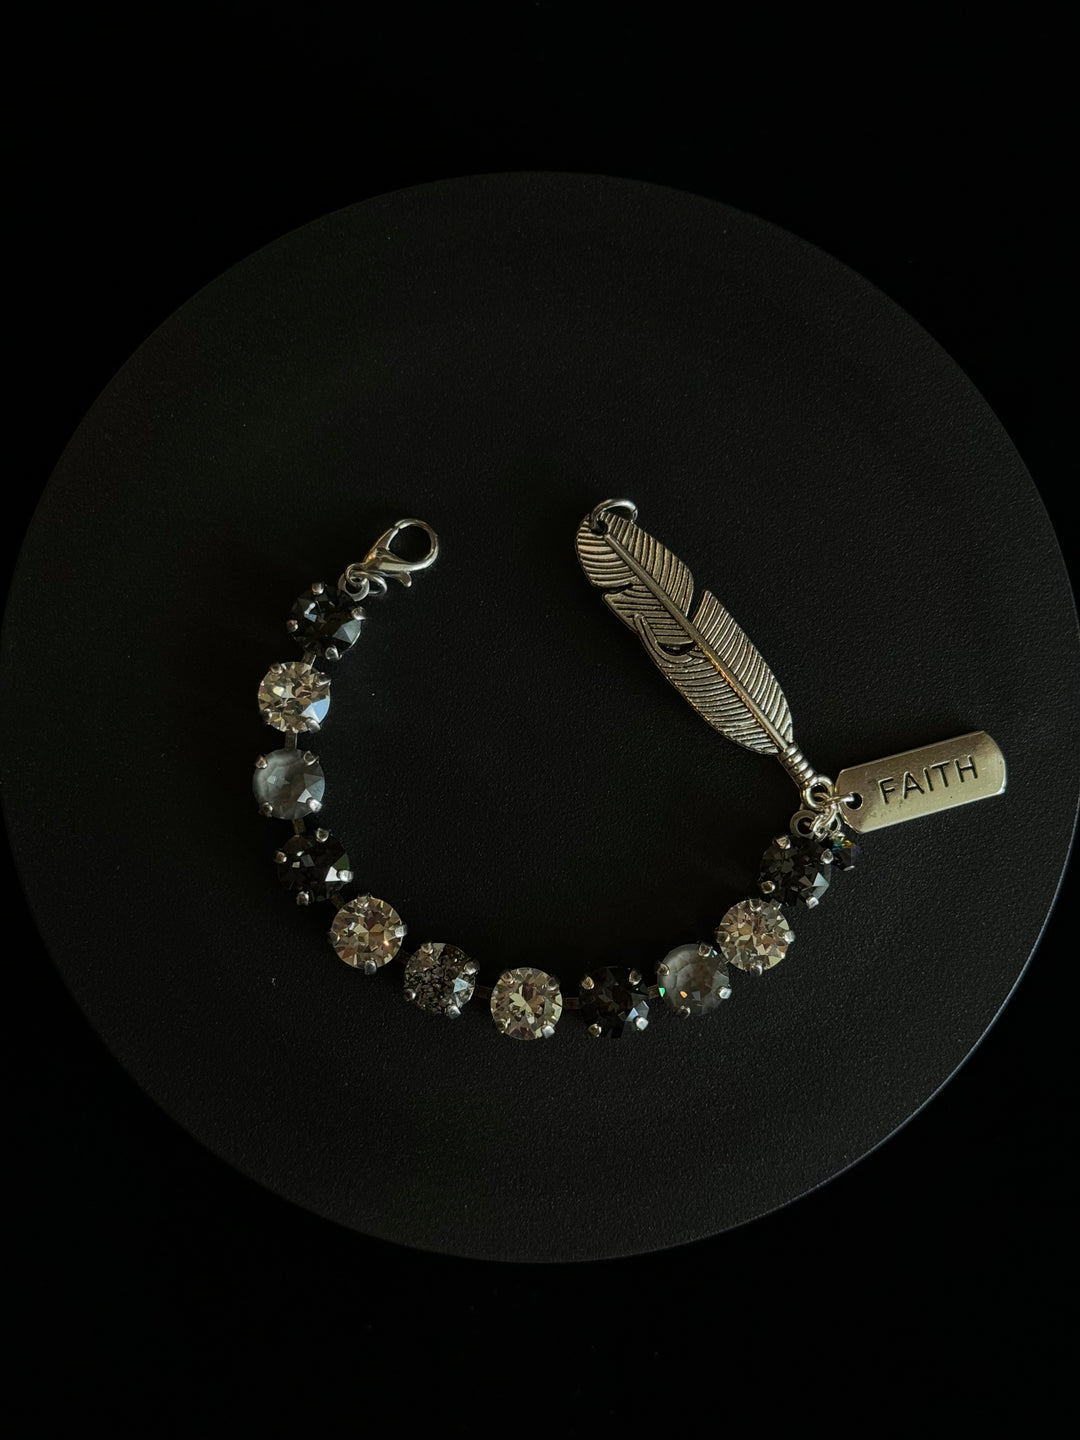 Faith Charm - Handcrafted Australian Crystal Feather Bracelet